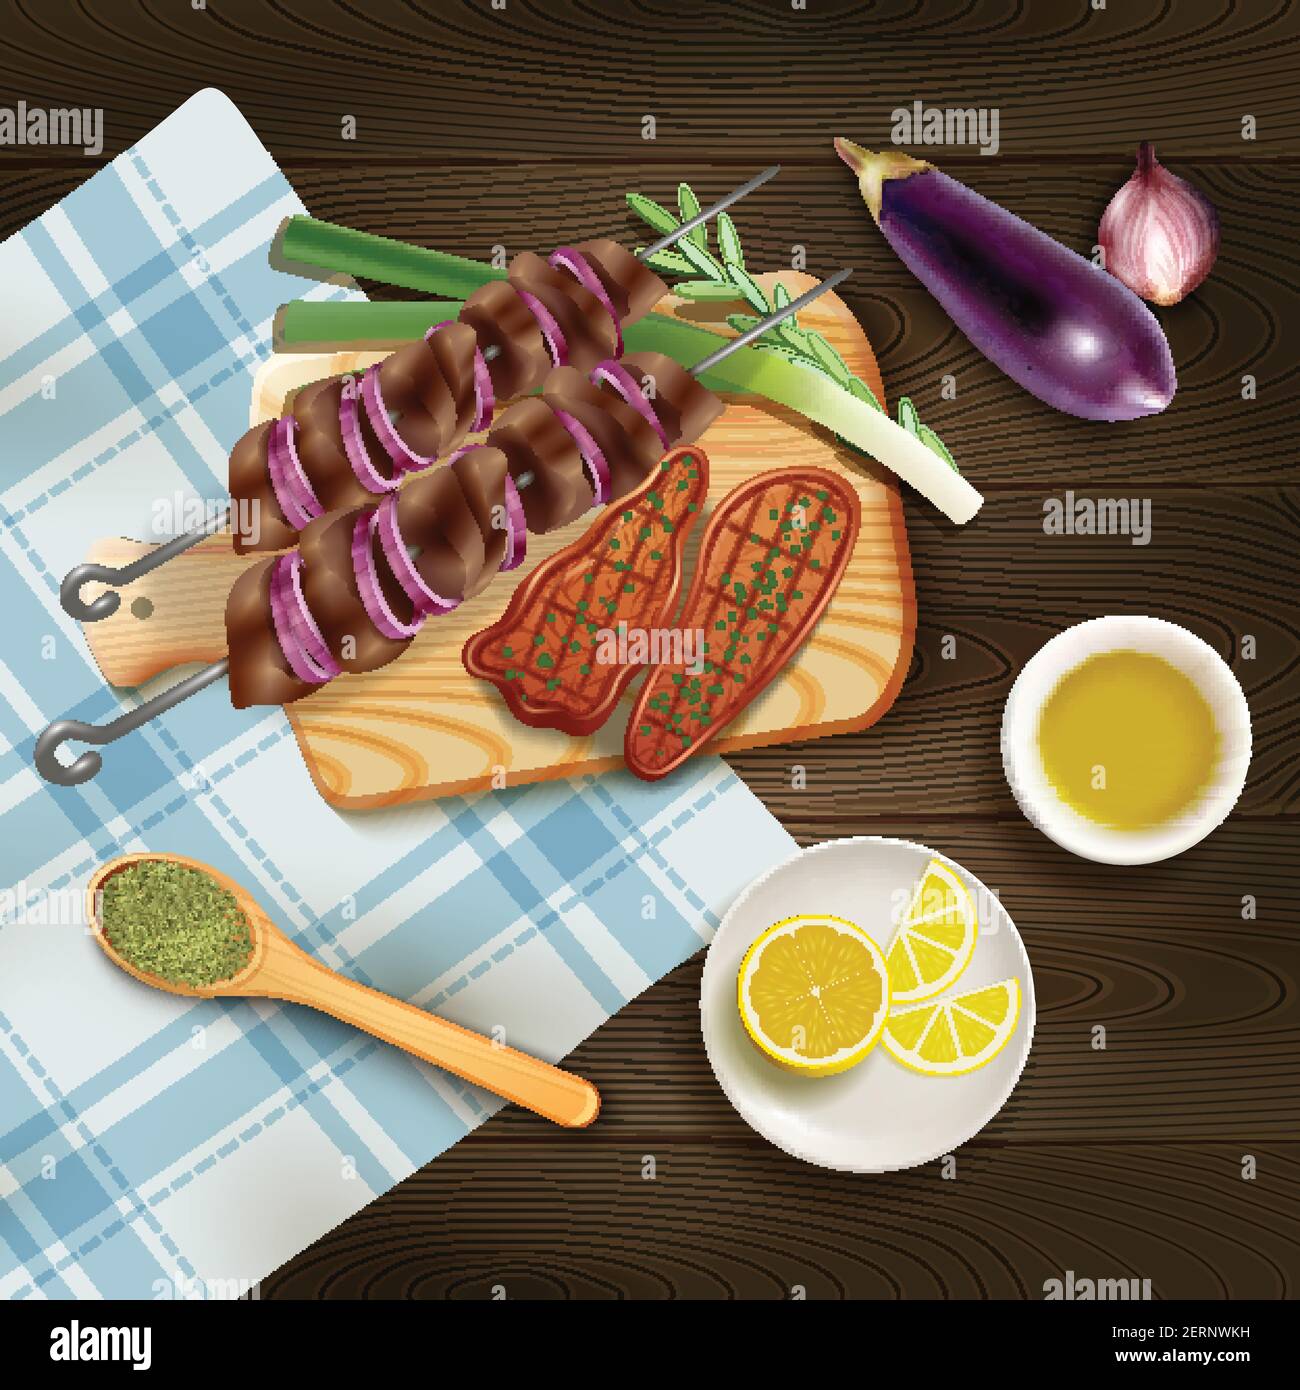 BBQ gegrillte Steaks und Kebab auf Schneidebrett mit Kräutern Und Gemüse realistische Vektor-Illustration Stock Vektor